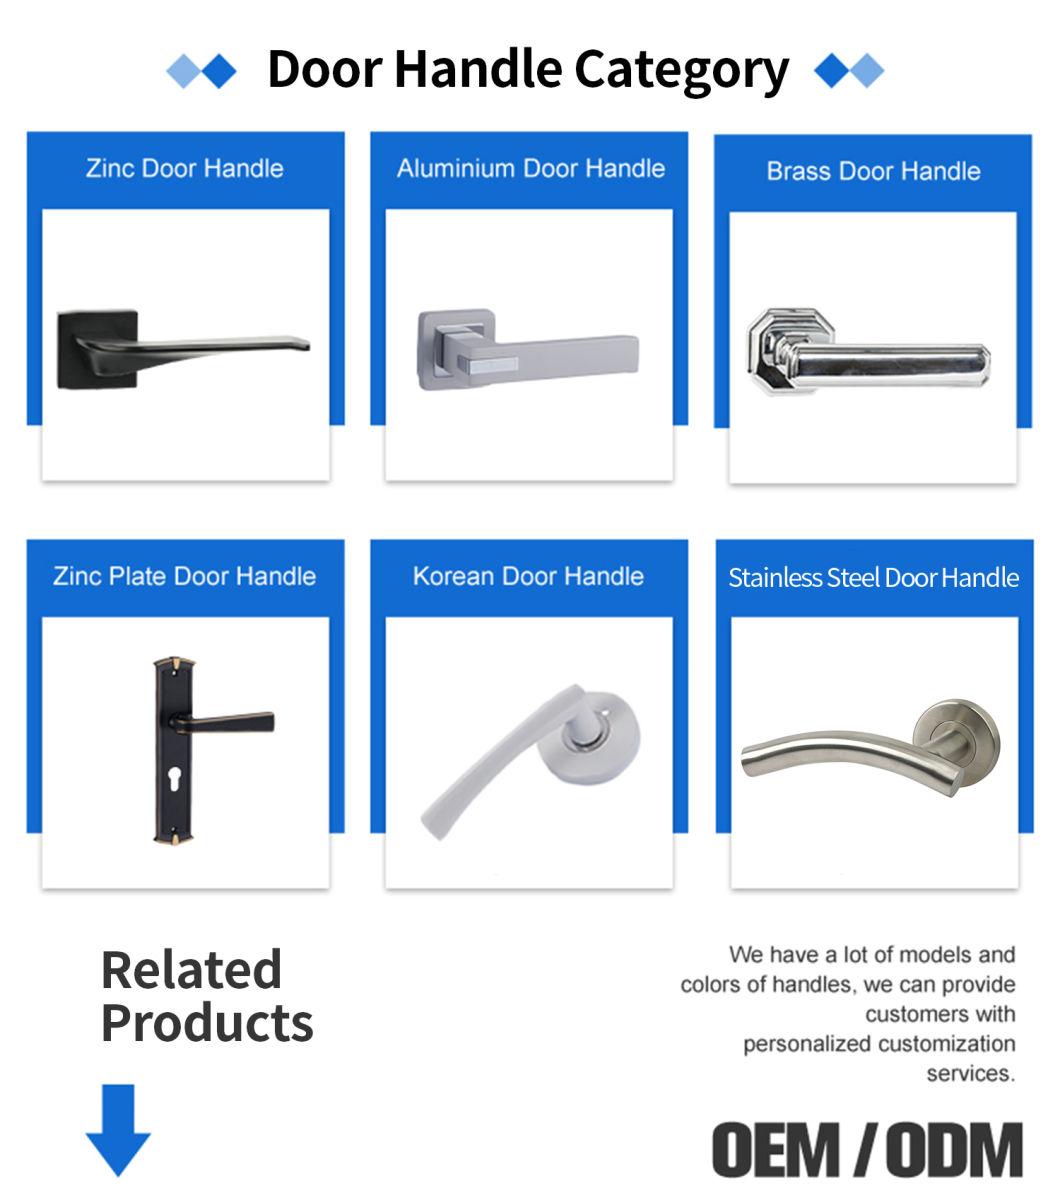 Classical Zinc Alloy Door Handles for Interior Wooden Door Lever Handle